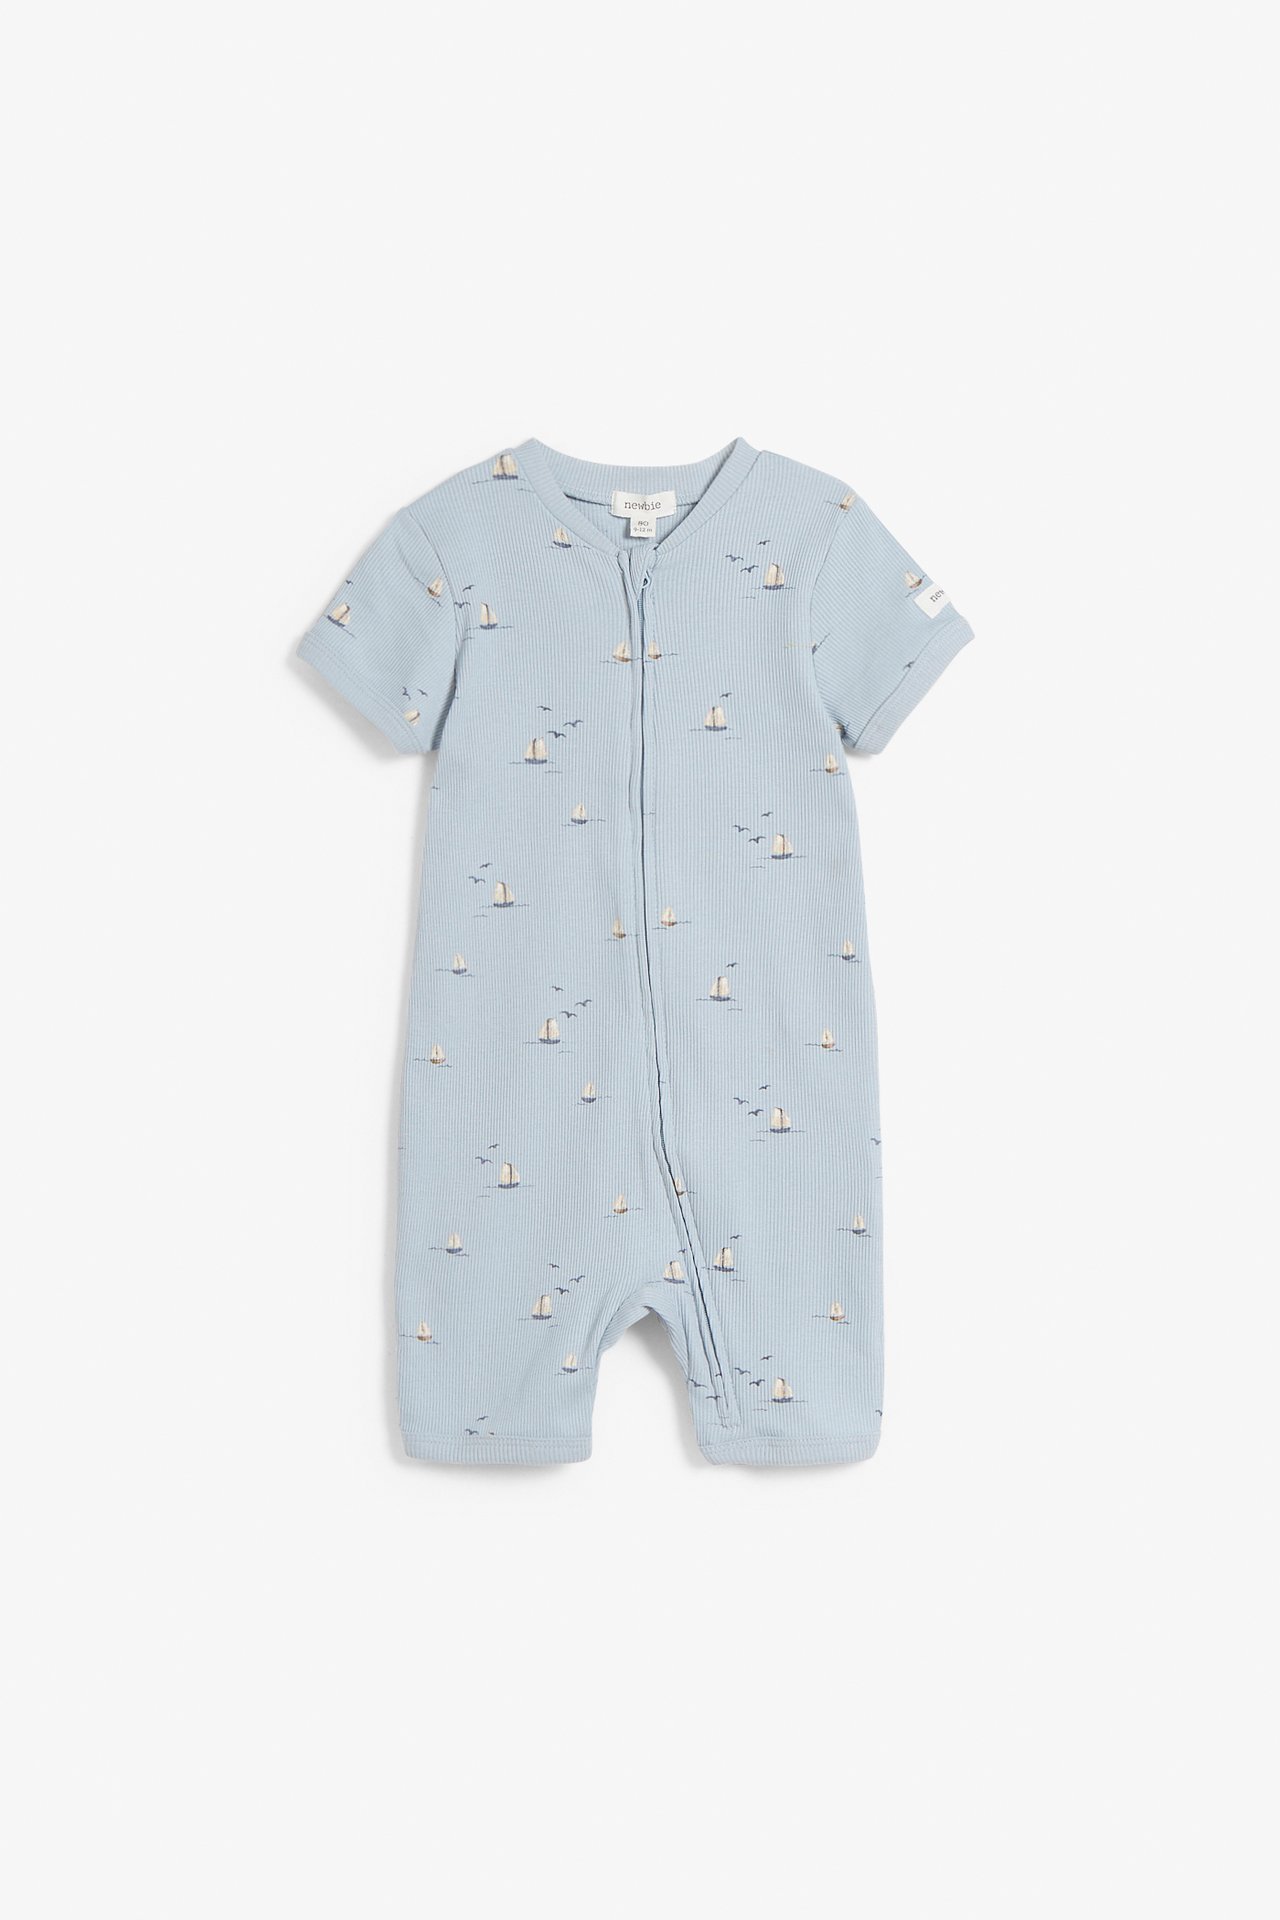 Piżama we wzory na całej powierzchni, dla niemowląt - Niebieski - 2